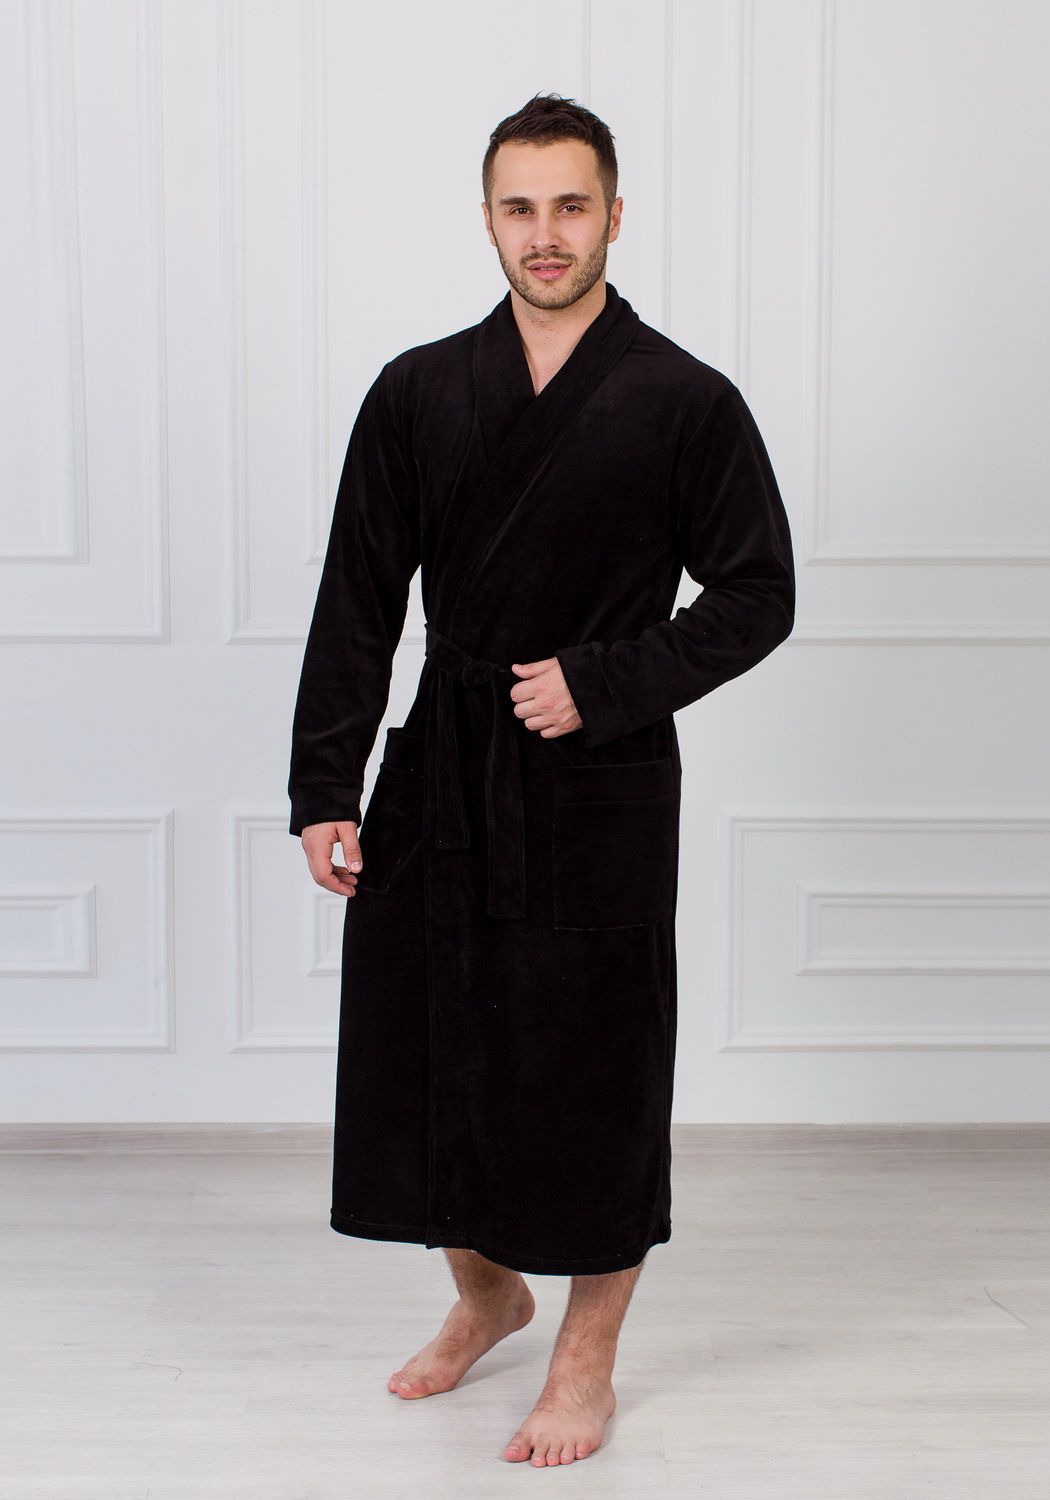 Мужские халаты купить вайлдберриз. Велюровый халат мужской. Чёрный халат мужской. Велюровый махровый халат мужской.